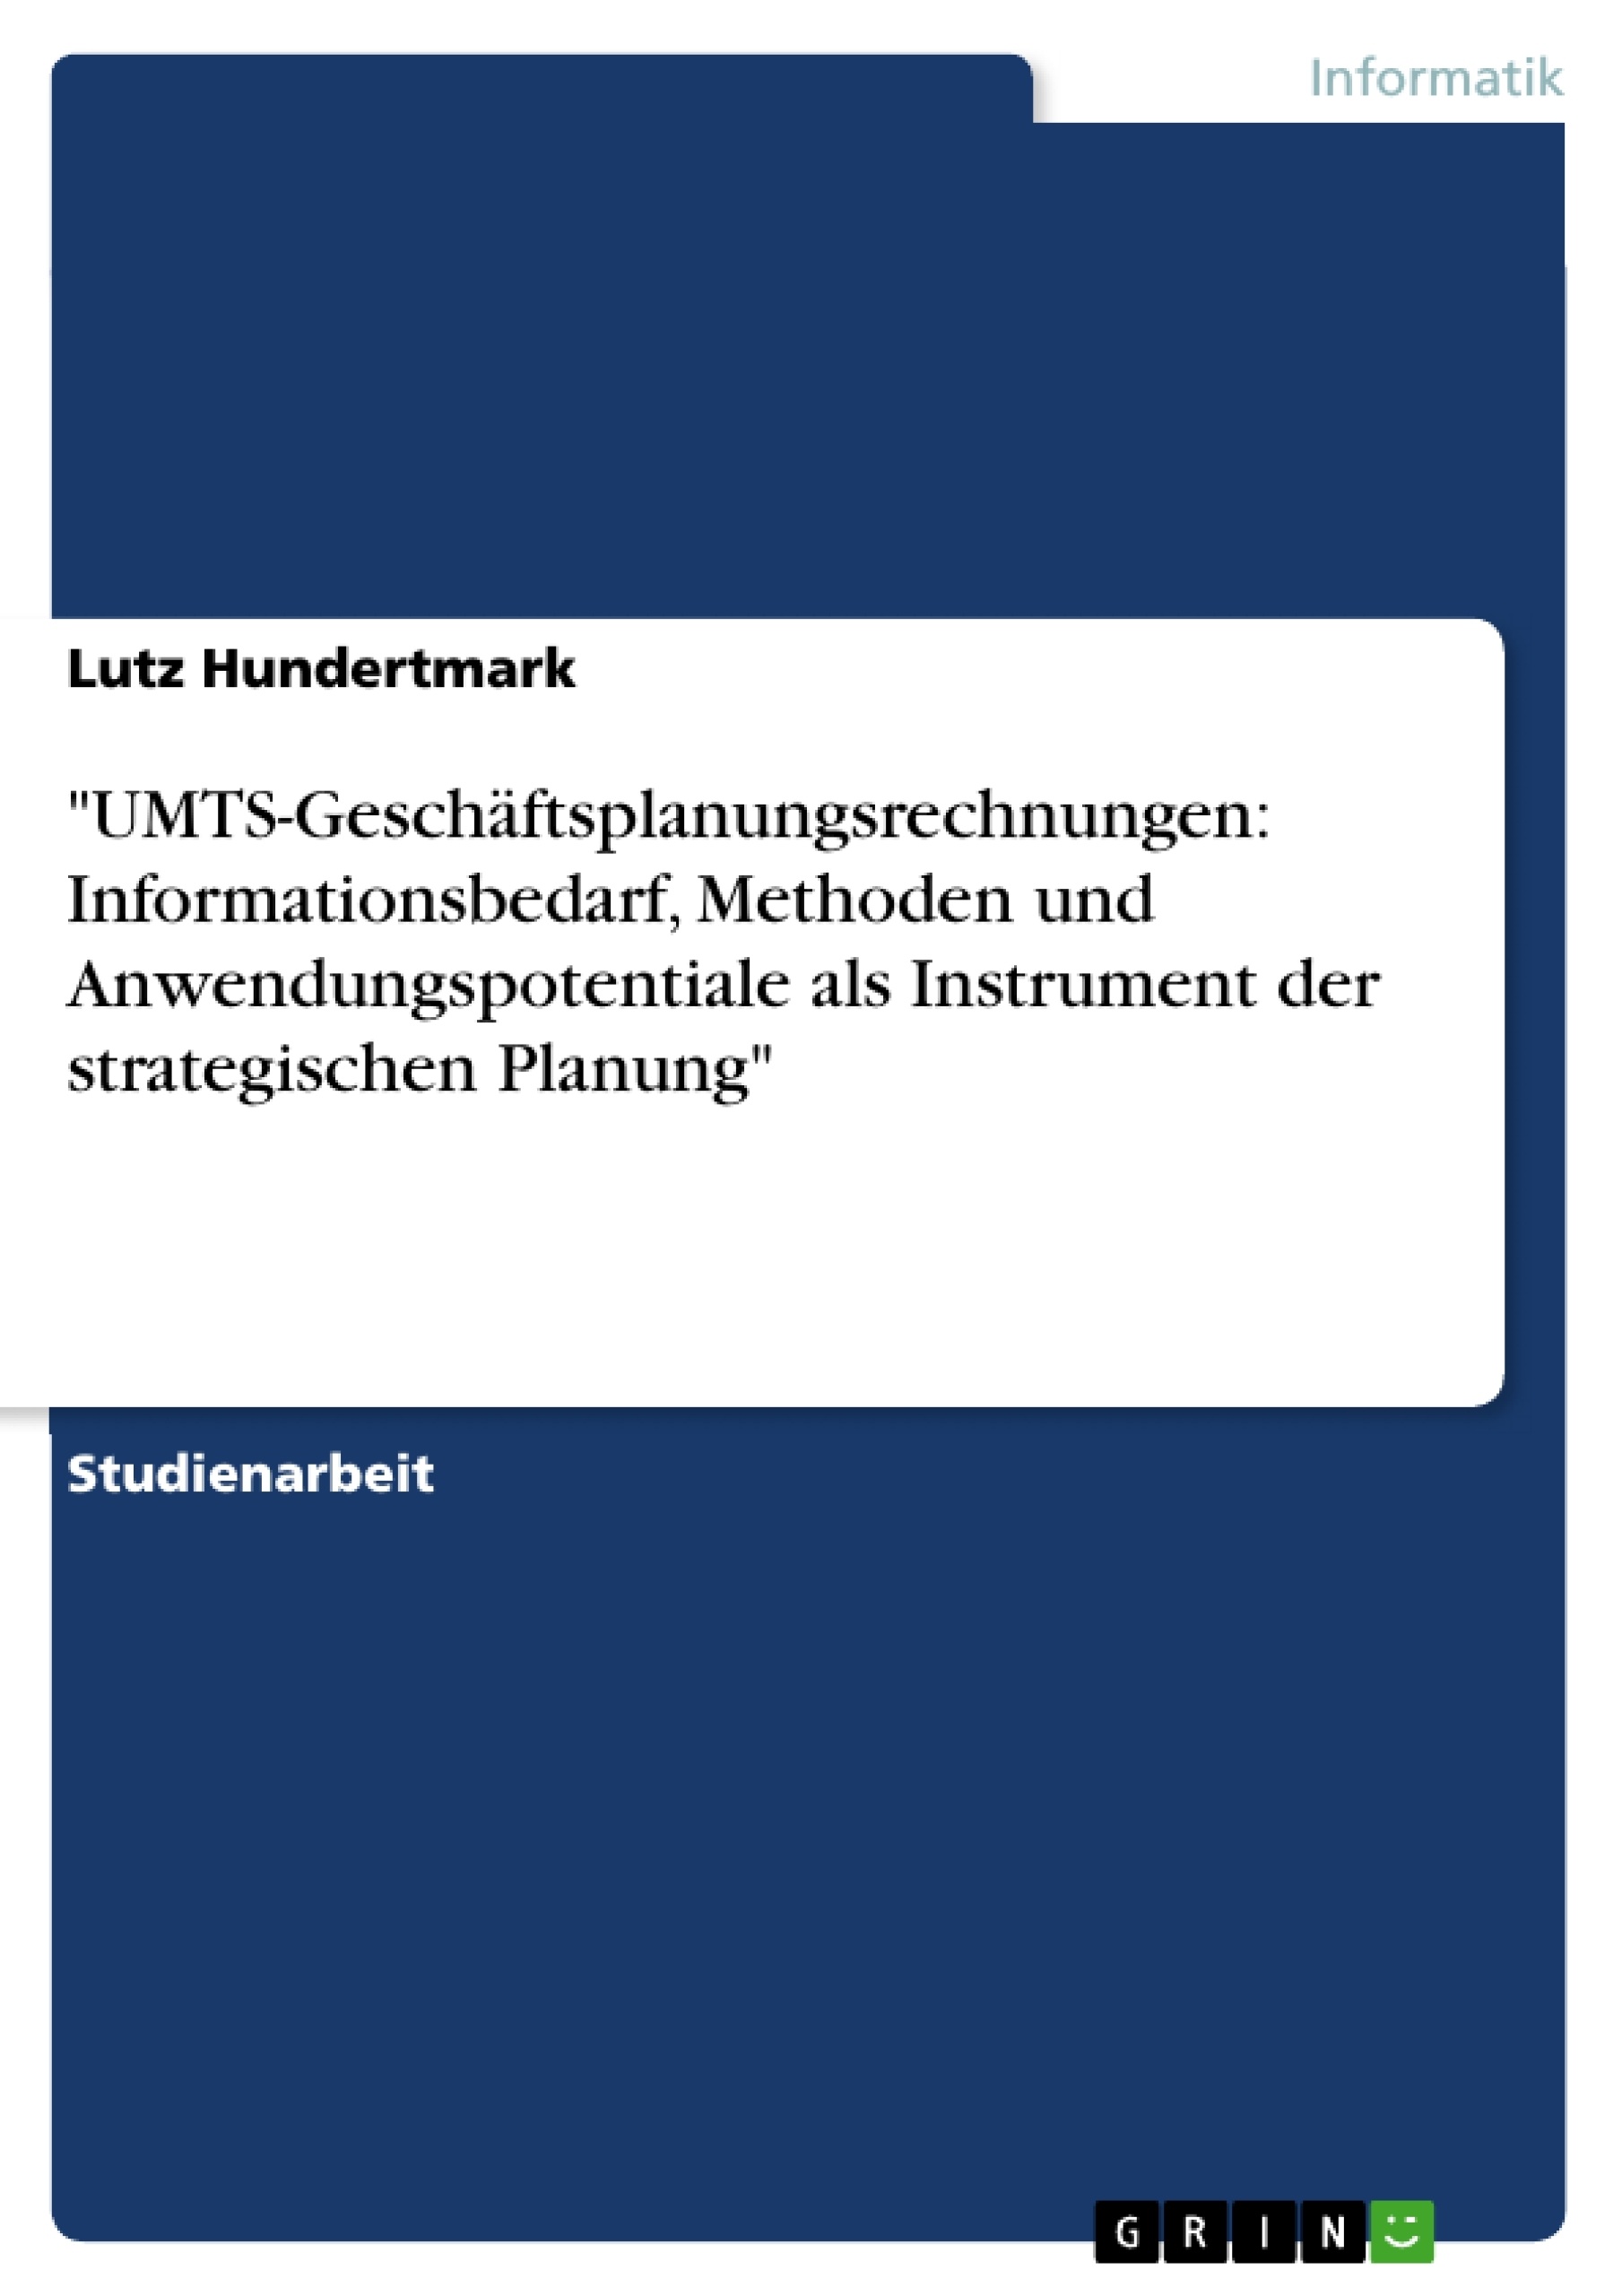 Titre: "UMTS-Geschäftsplanungsrechnungen: Informationsbedarf, Methoden und Anwendungspotentiale als Instrument der strategischen Planung"